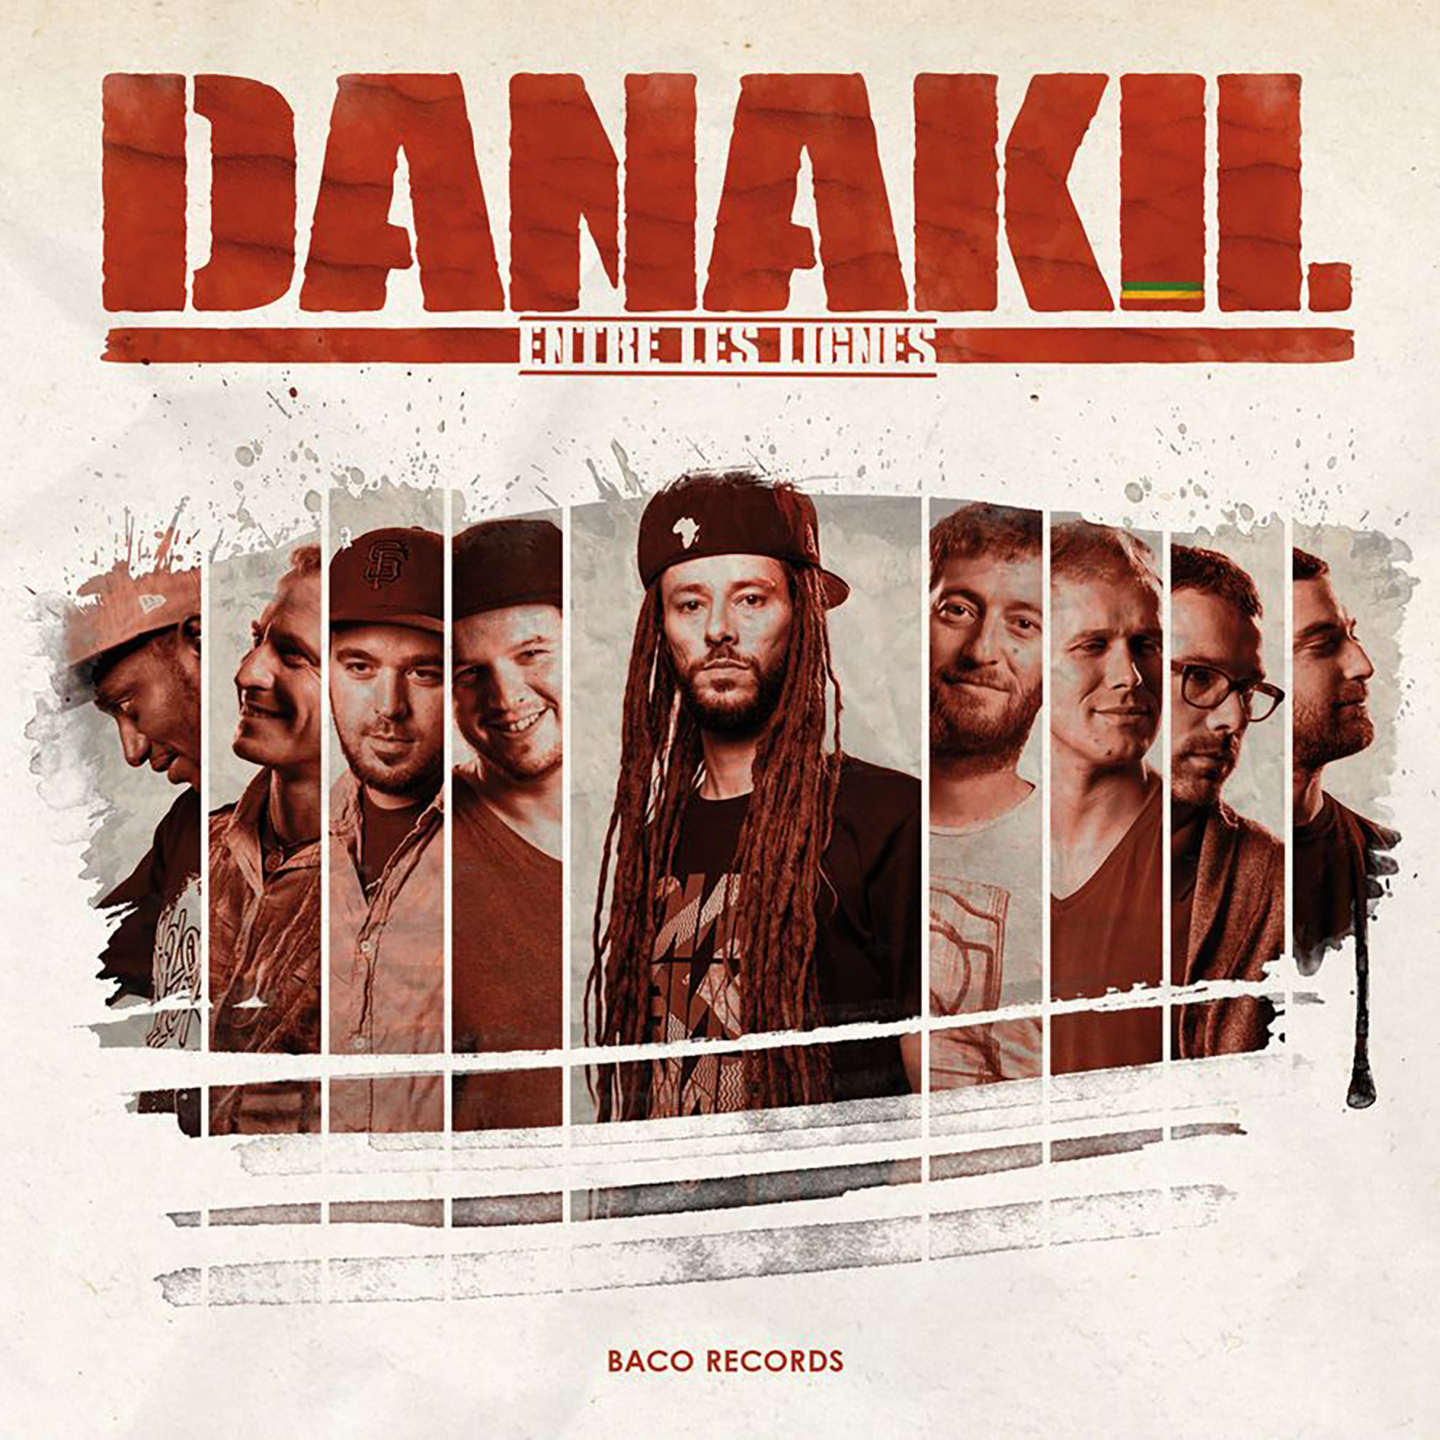 Cover de l'album de Danakil Entre les lignes. Réalisé par Loseou